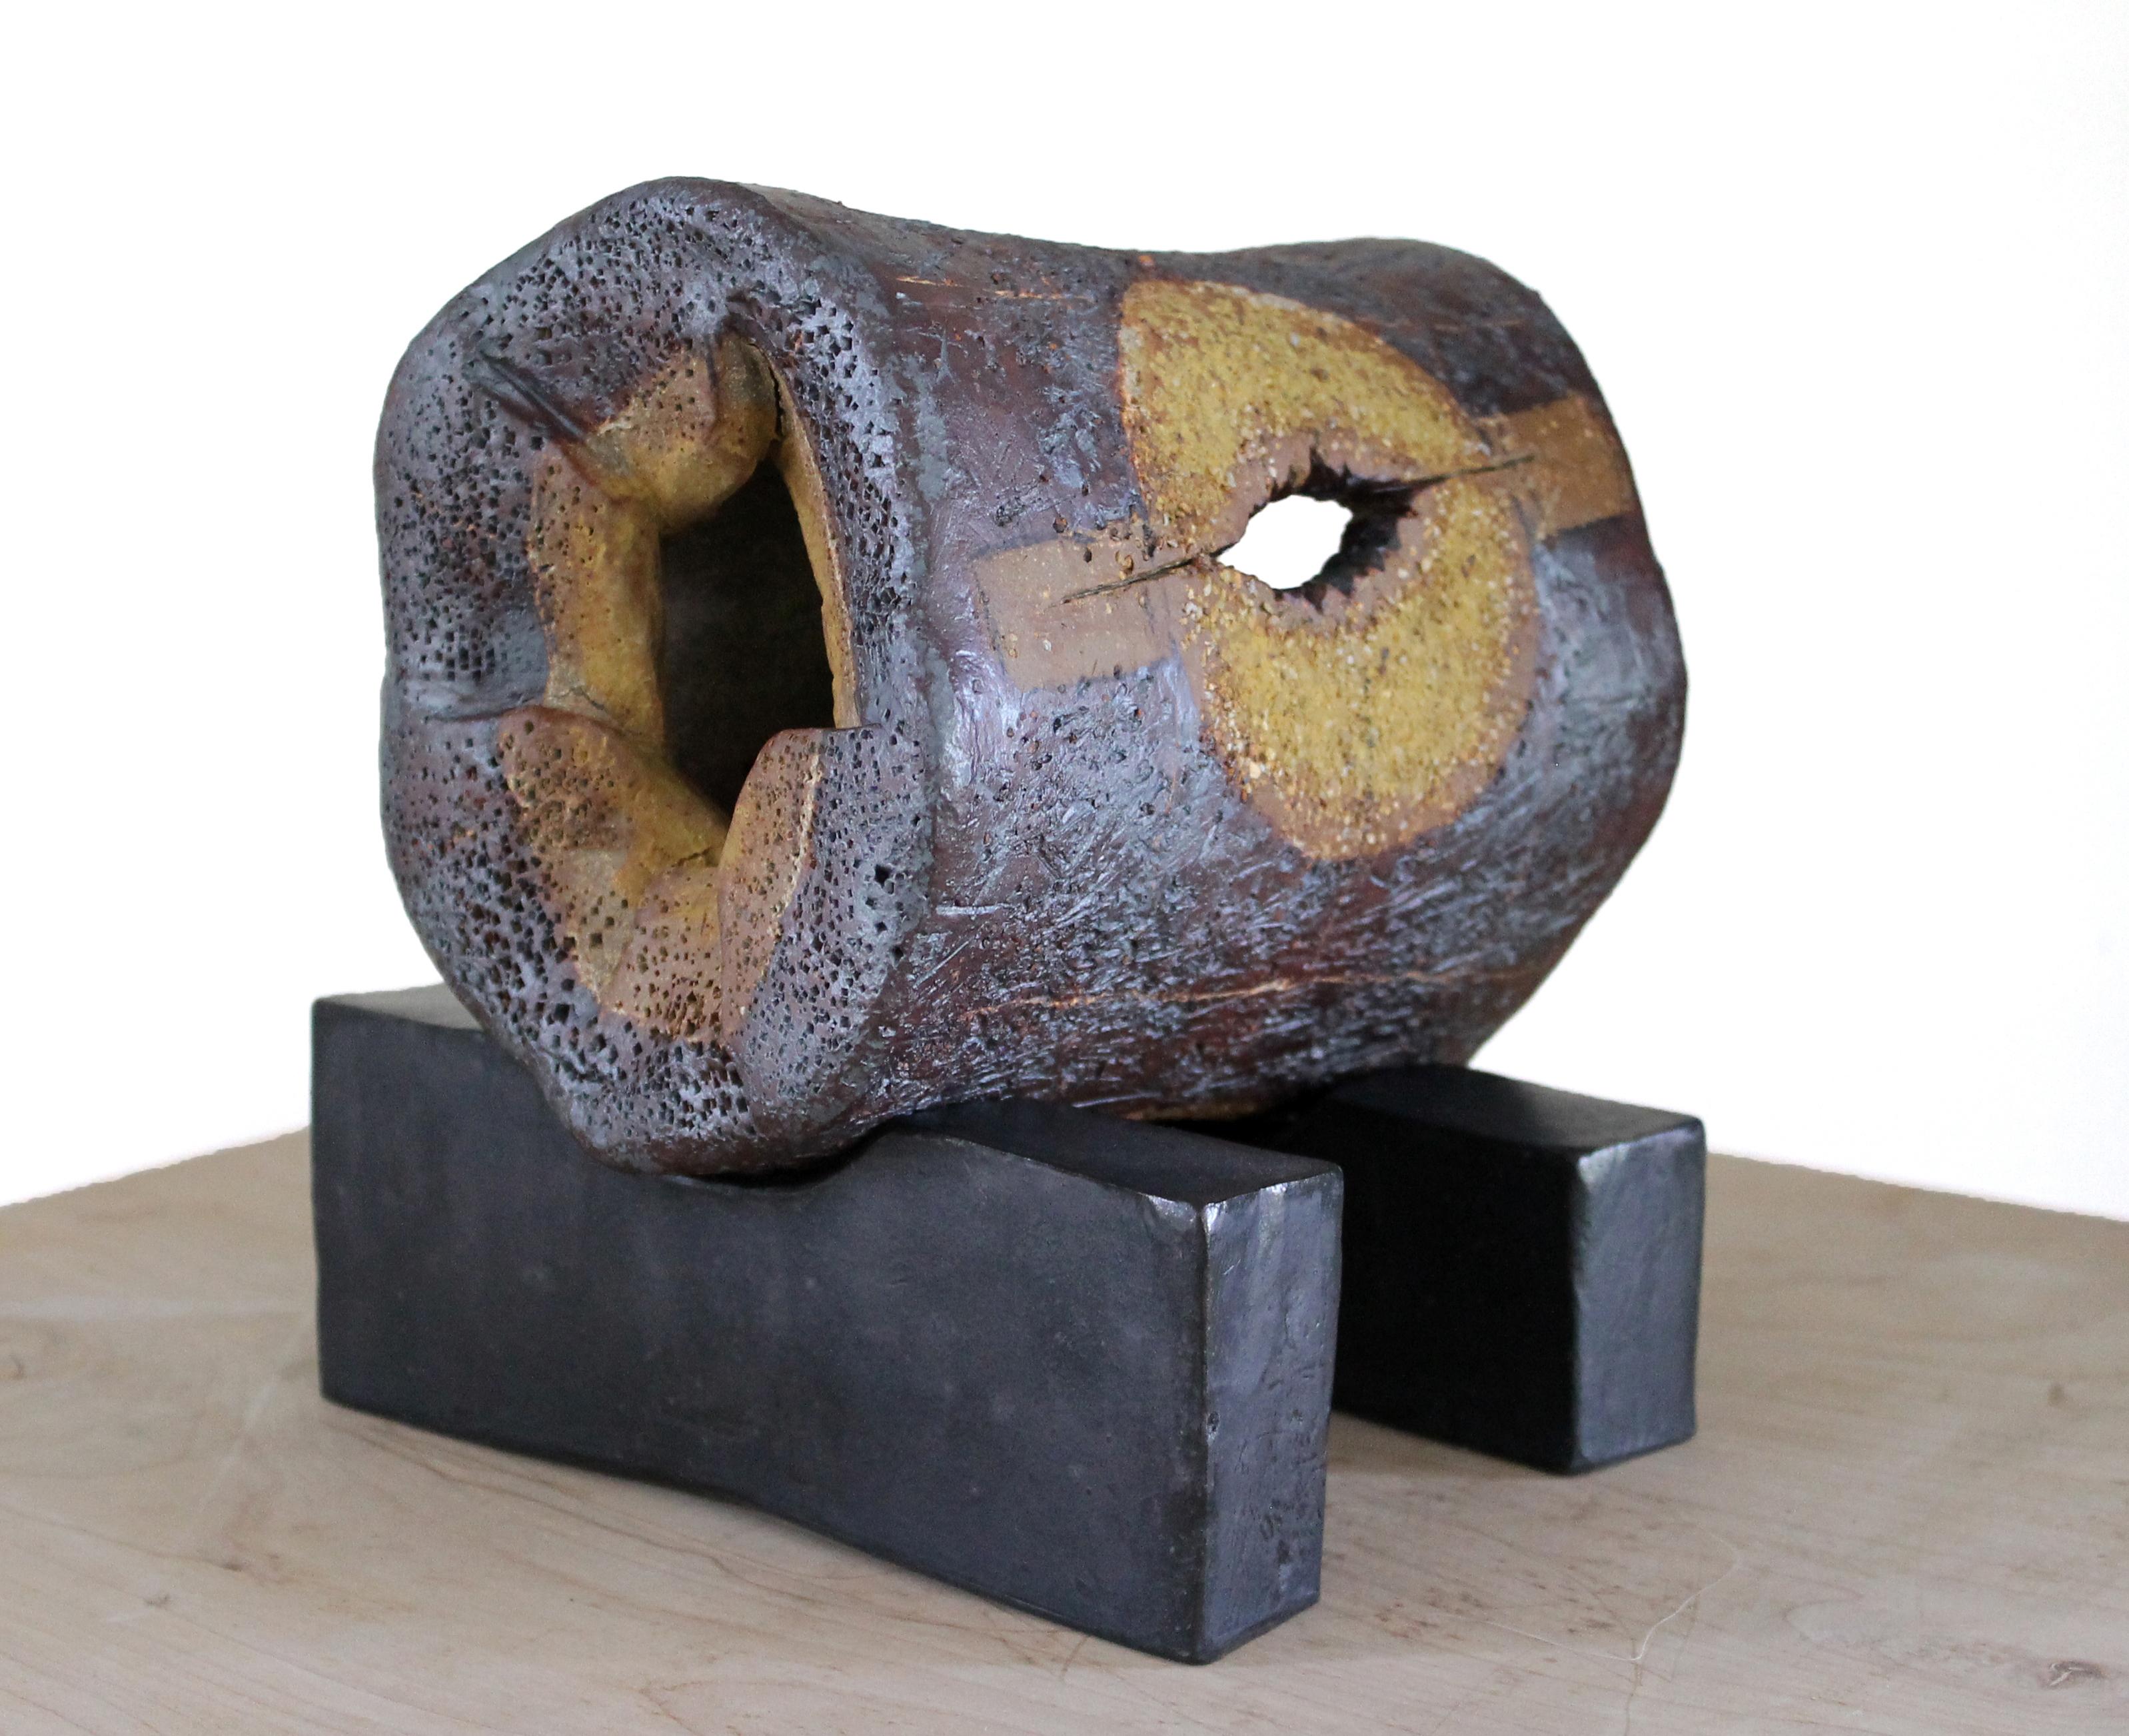 « OBJET ROTIQUE », sculpture, argile, abstrait, contemporain, céramique, érotique - Mixed Media Art de Harold Wortsman